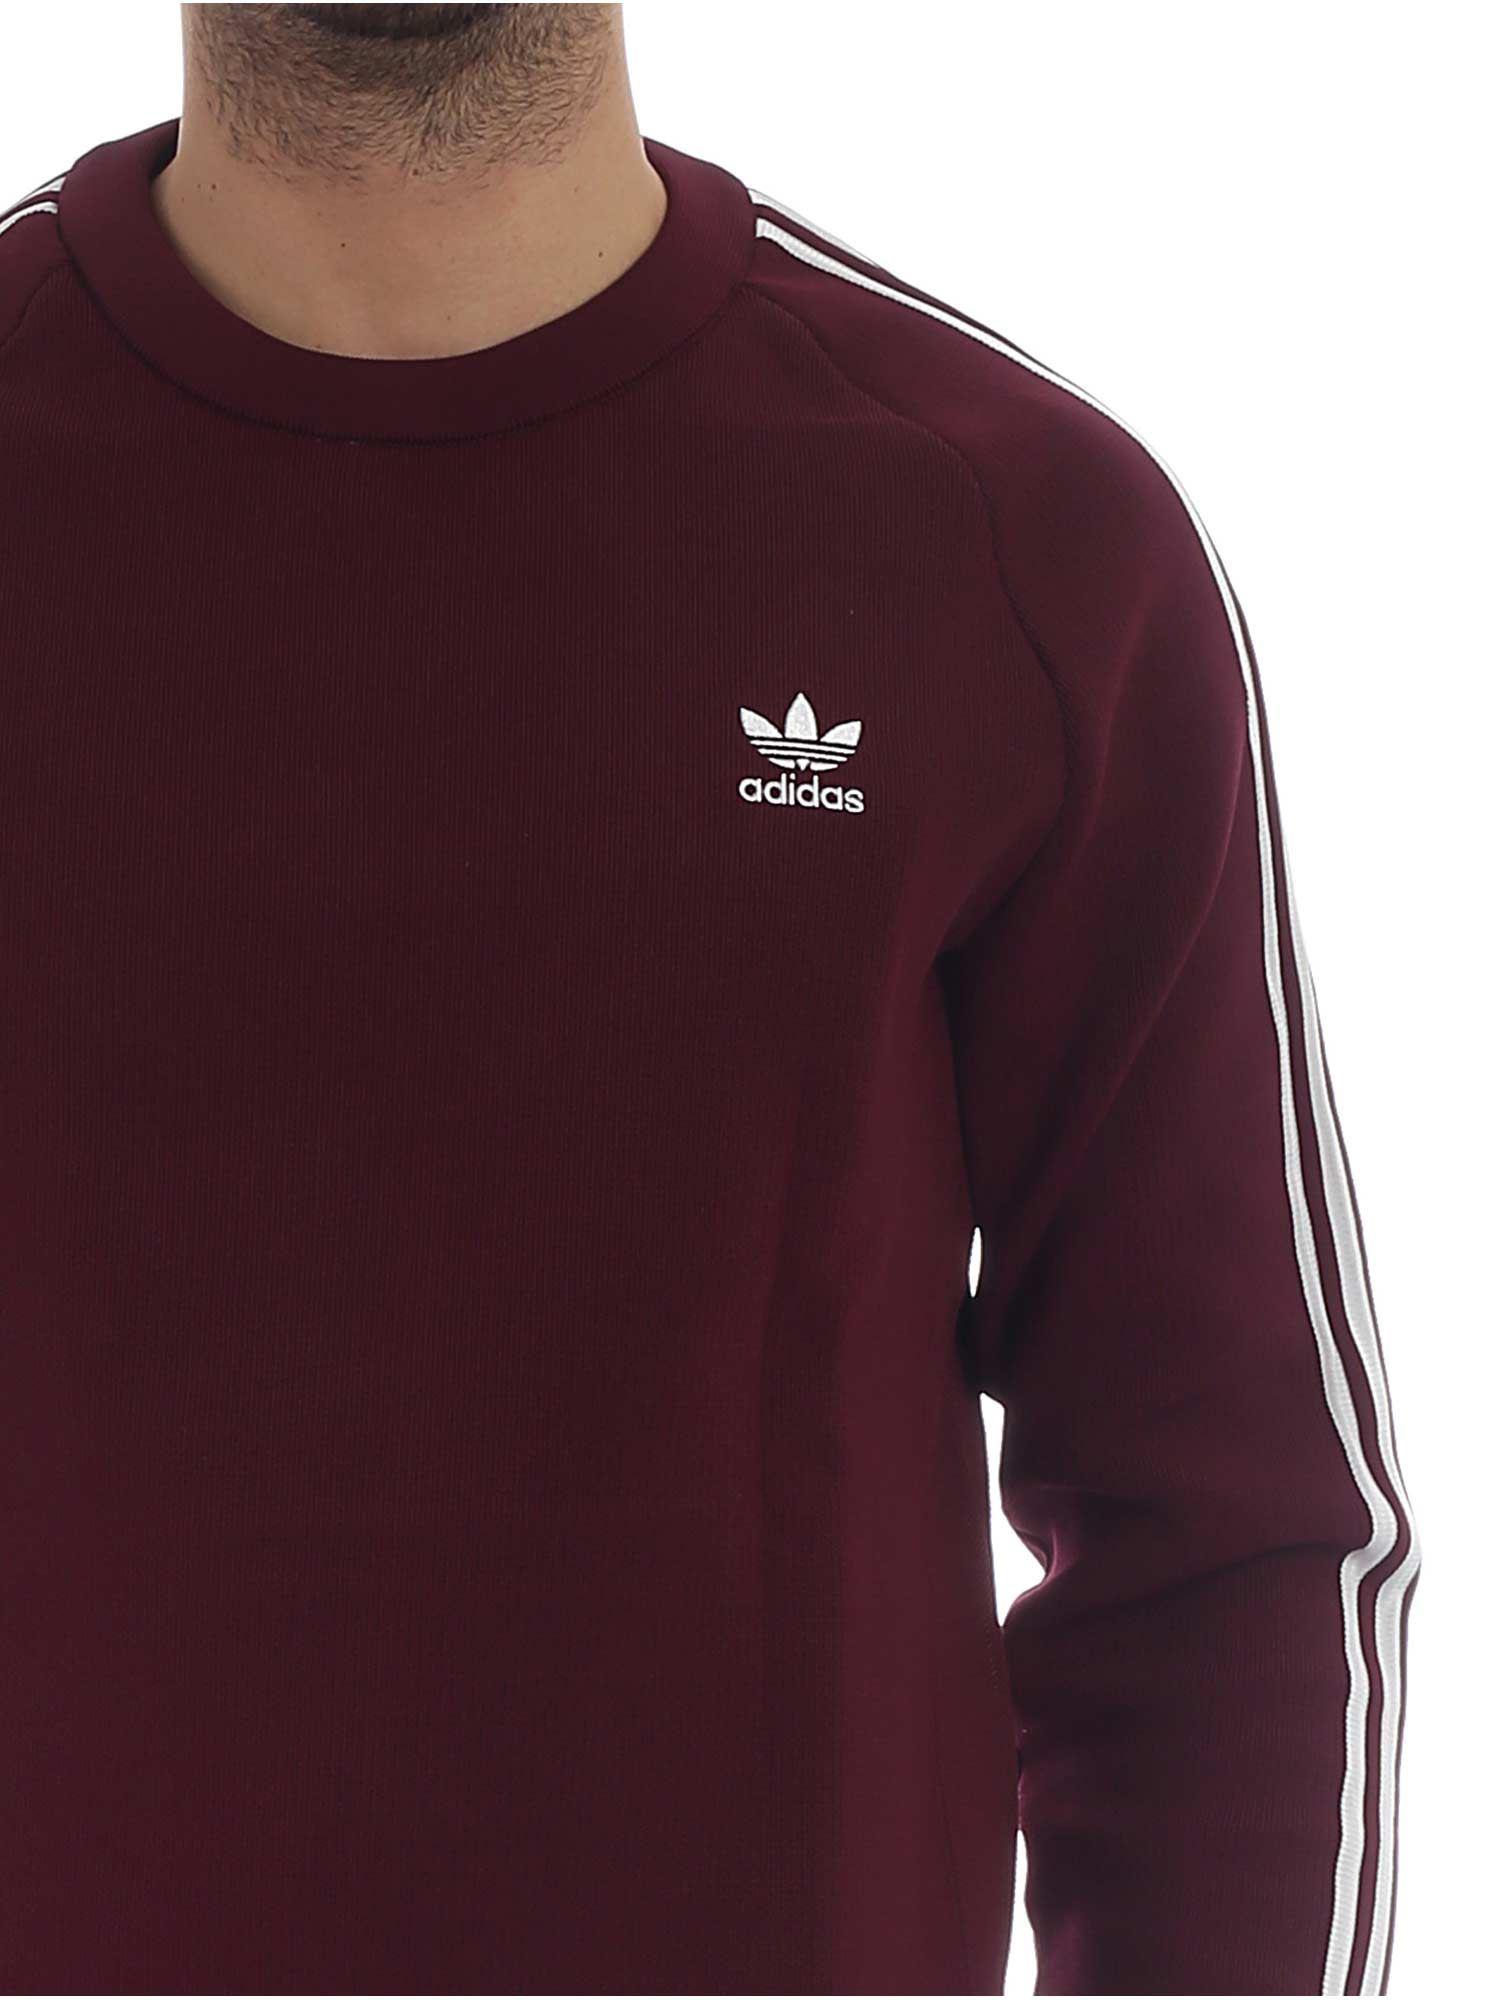 Adidas Sweatshirt Burgundy Hotsell, GET 51% OFF, cleavereast.ie